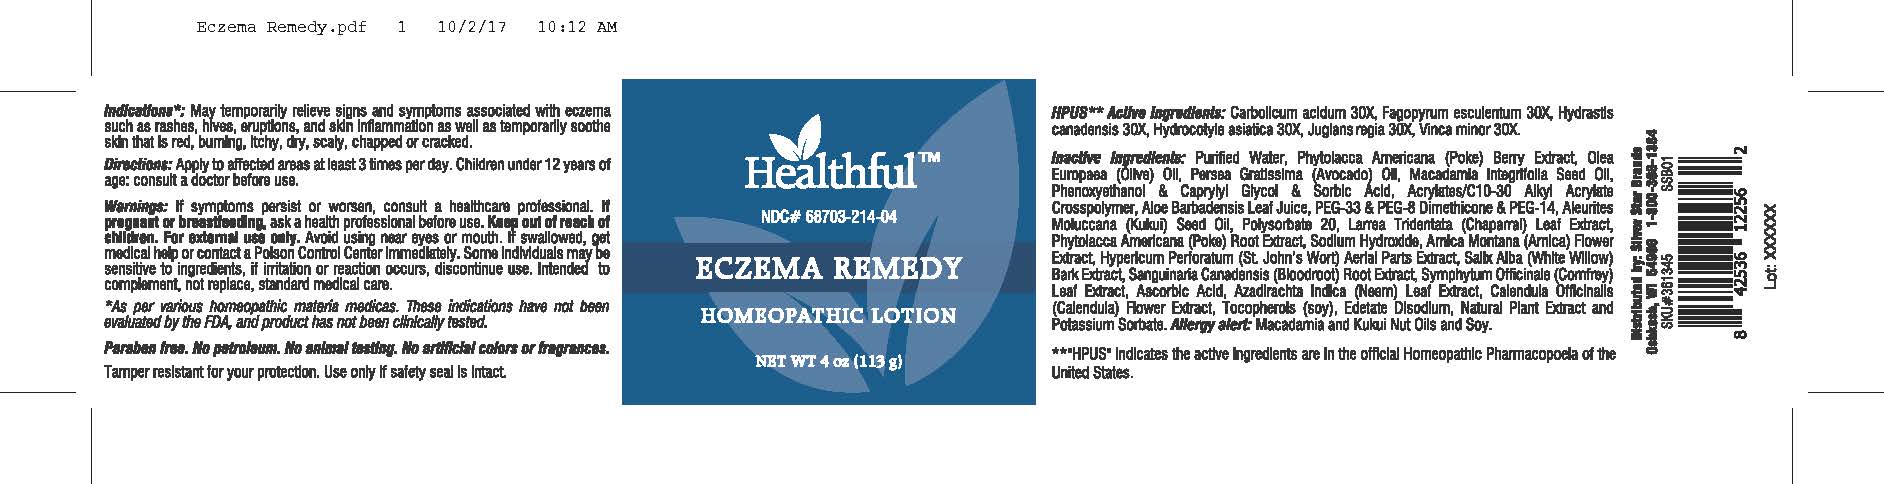 Eczema Remedy